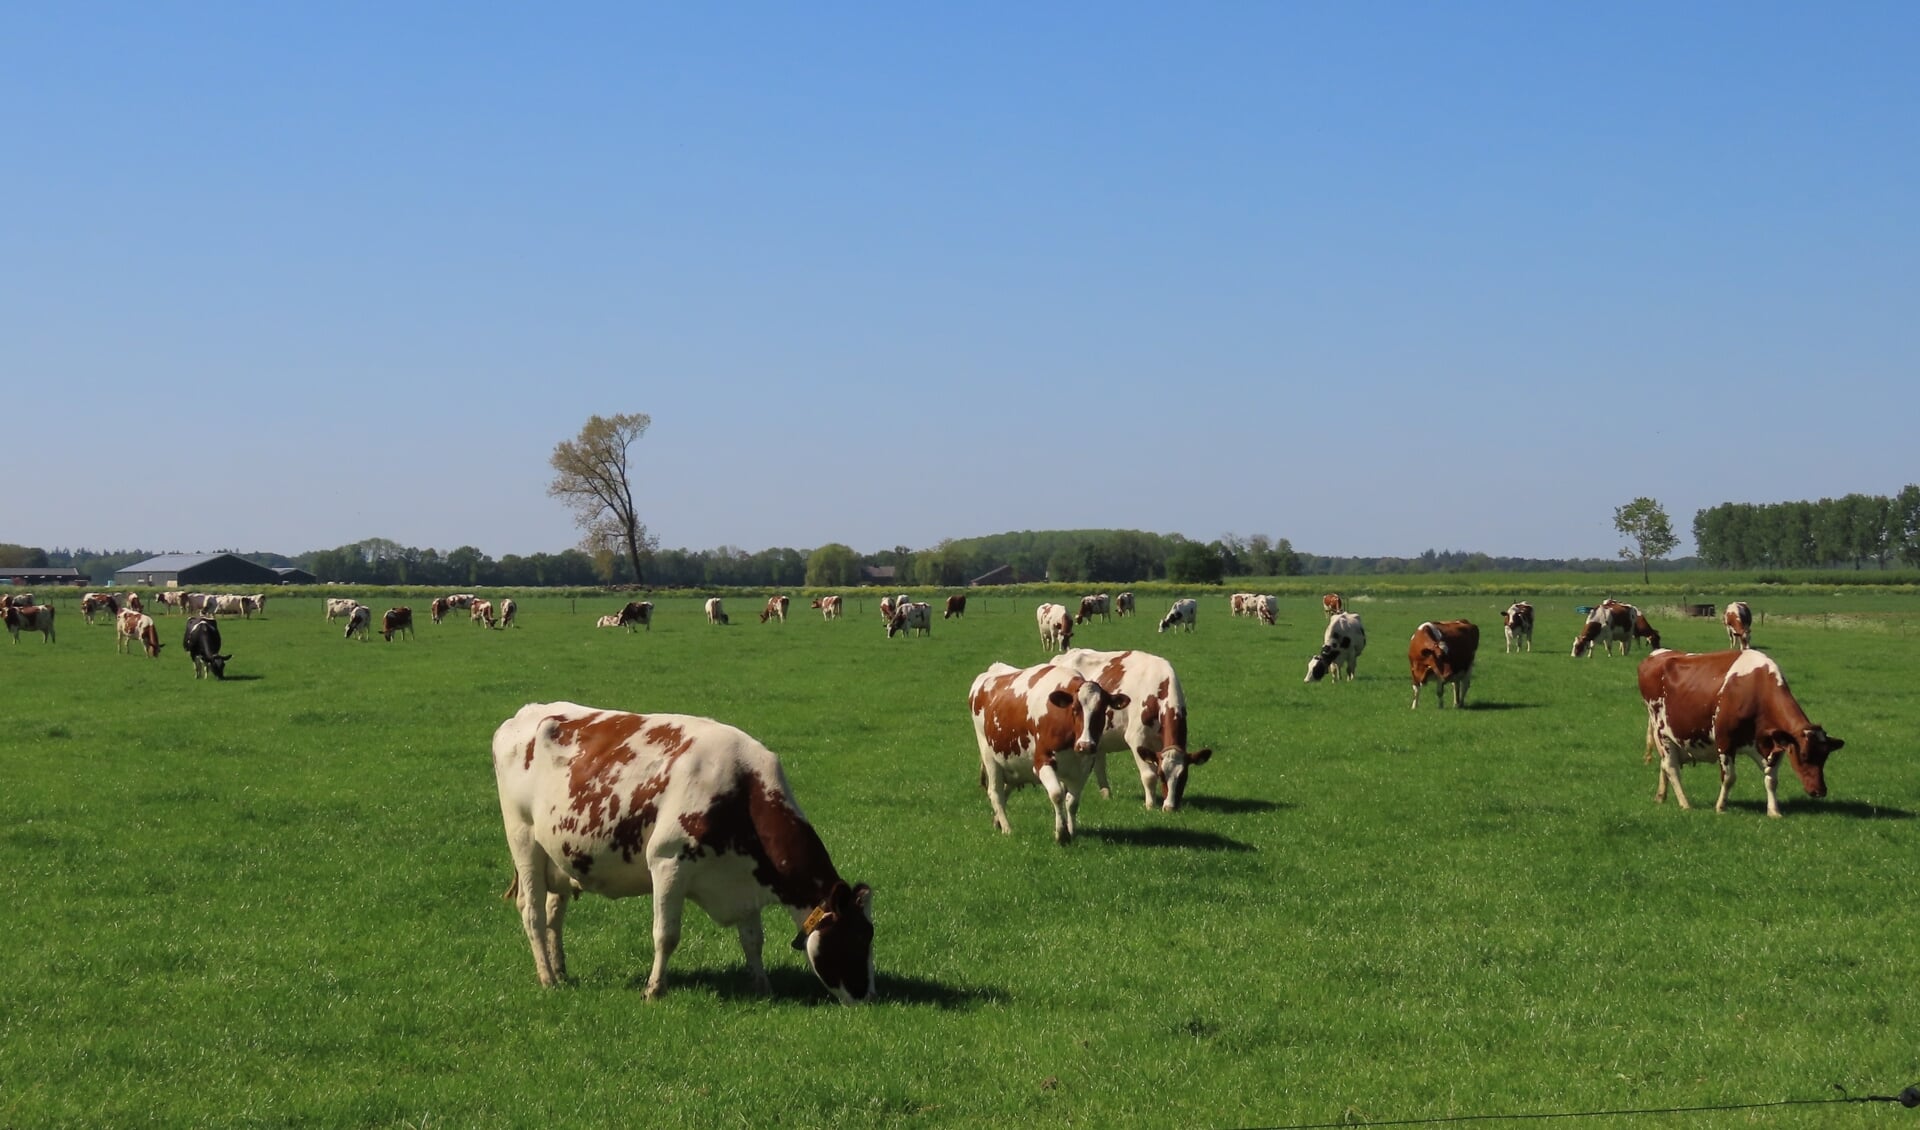 Koeien in de wei met strak blauwe lucht, een mooi Hollands plaatje.